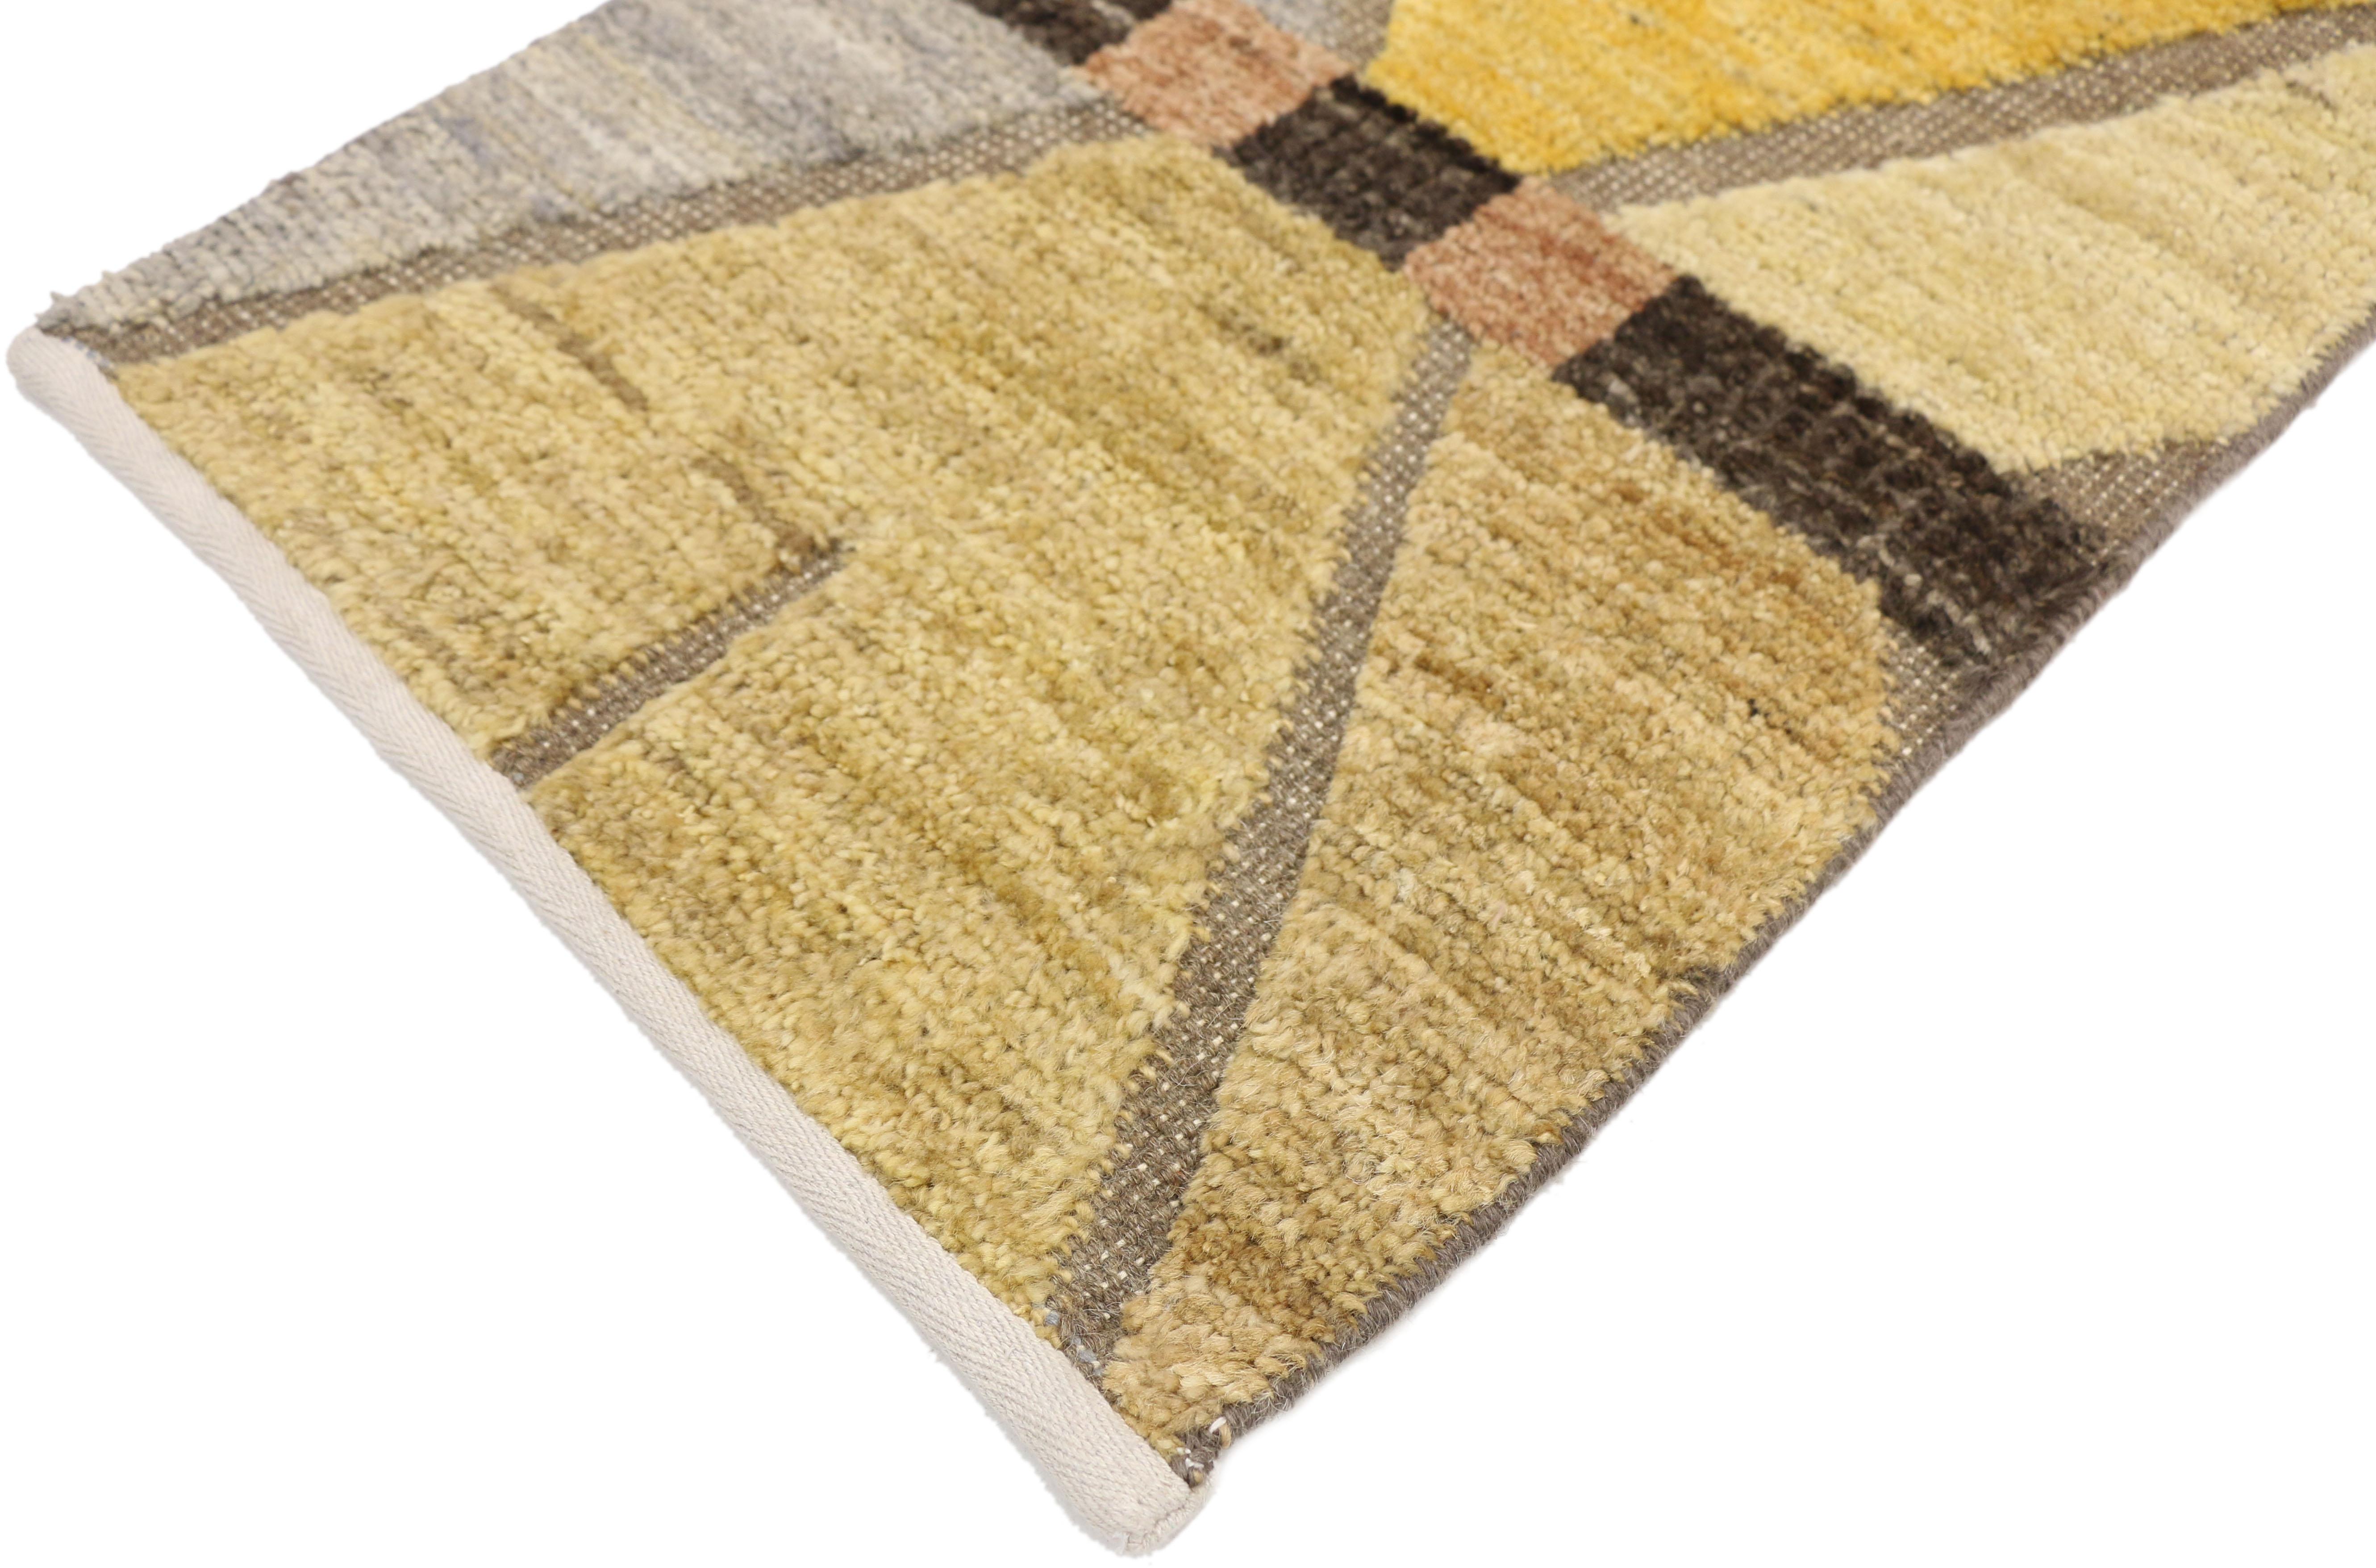 80455 New Contemporary High-Low Wagireh Rug, 01'07 x 02'01. Zeitgenössische Wagireh-Teppiche aus Pakistan stellen eine moderne Interpretation der traditionellen Technik dar, bei der komplizierte kleine Muster zu größeren Teppichen gewebt werden.